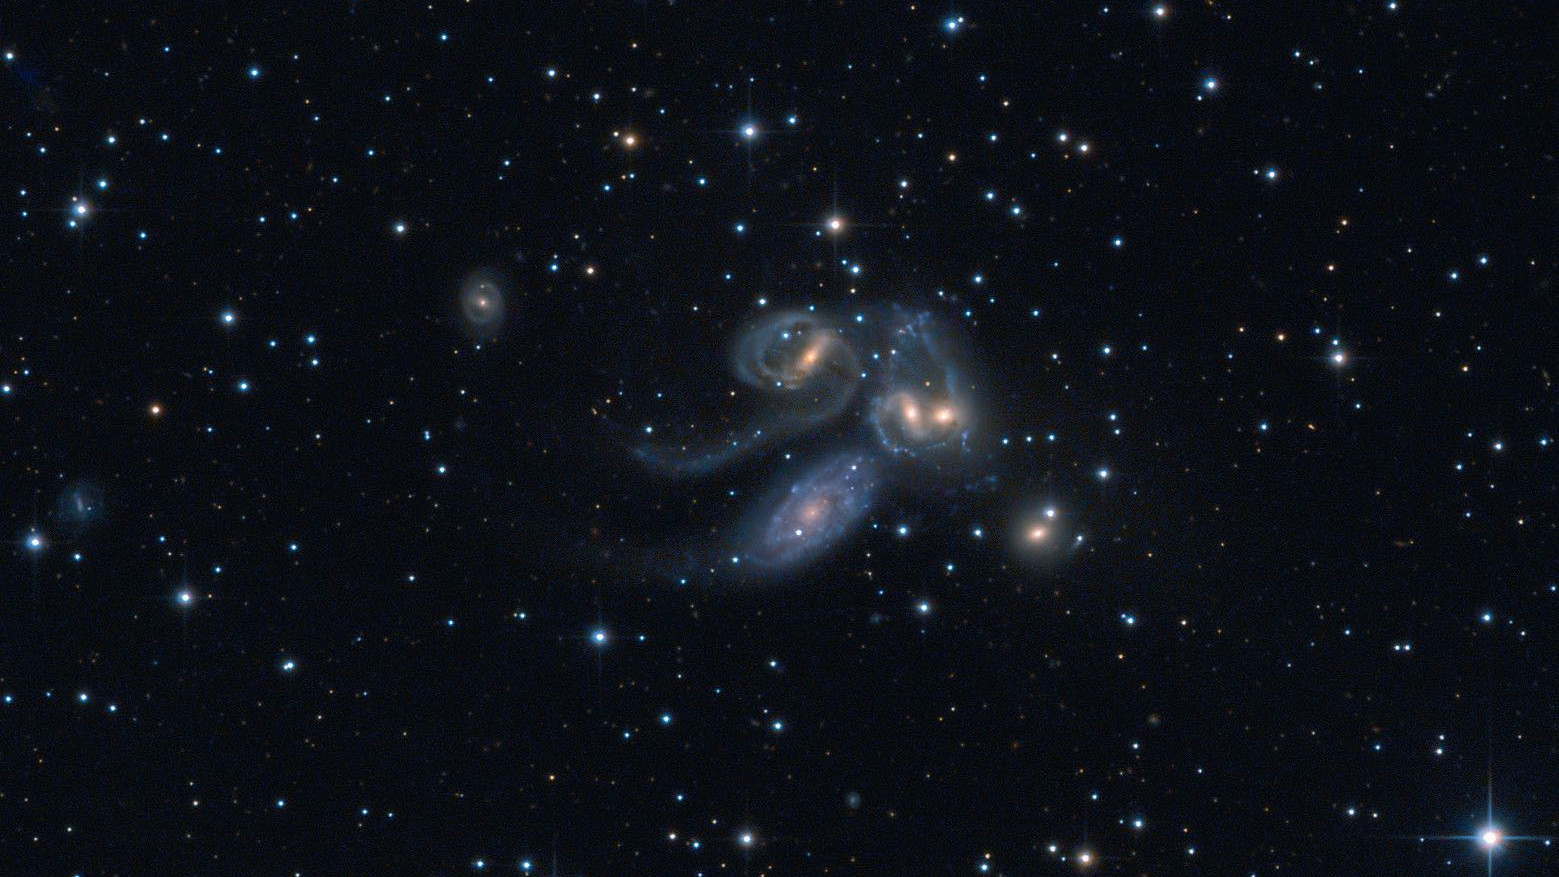 Quintette de Stephan : NGC 7320C (en haut à gauche), NGC 7319, NGC 7318B, NGC 7318A et NGC 7217 (en bas à droite). NGC 7320 (en bas à gauche) ne fait pas partie du groupe. Wolfgang Promper